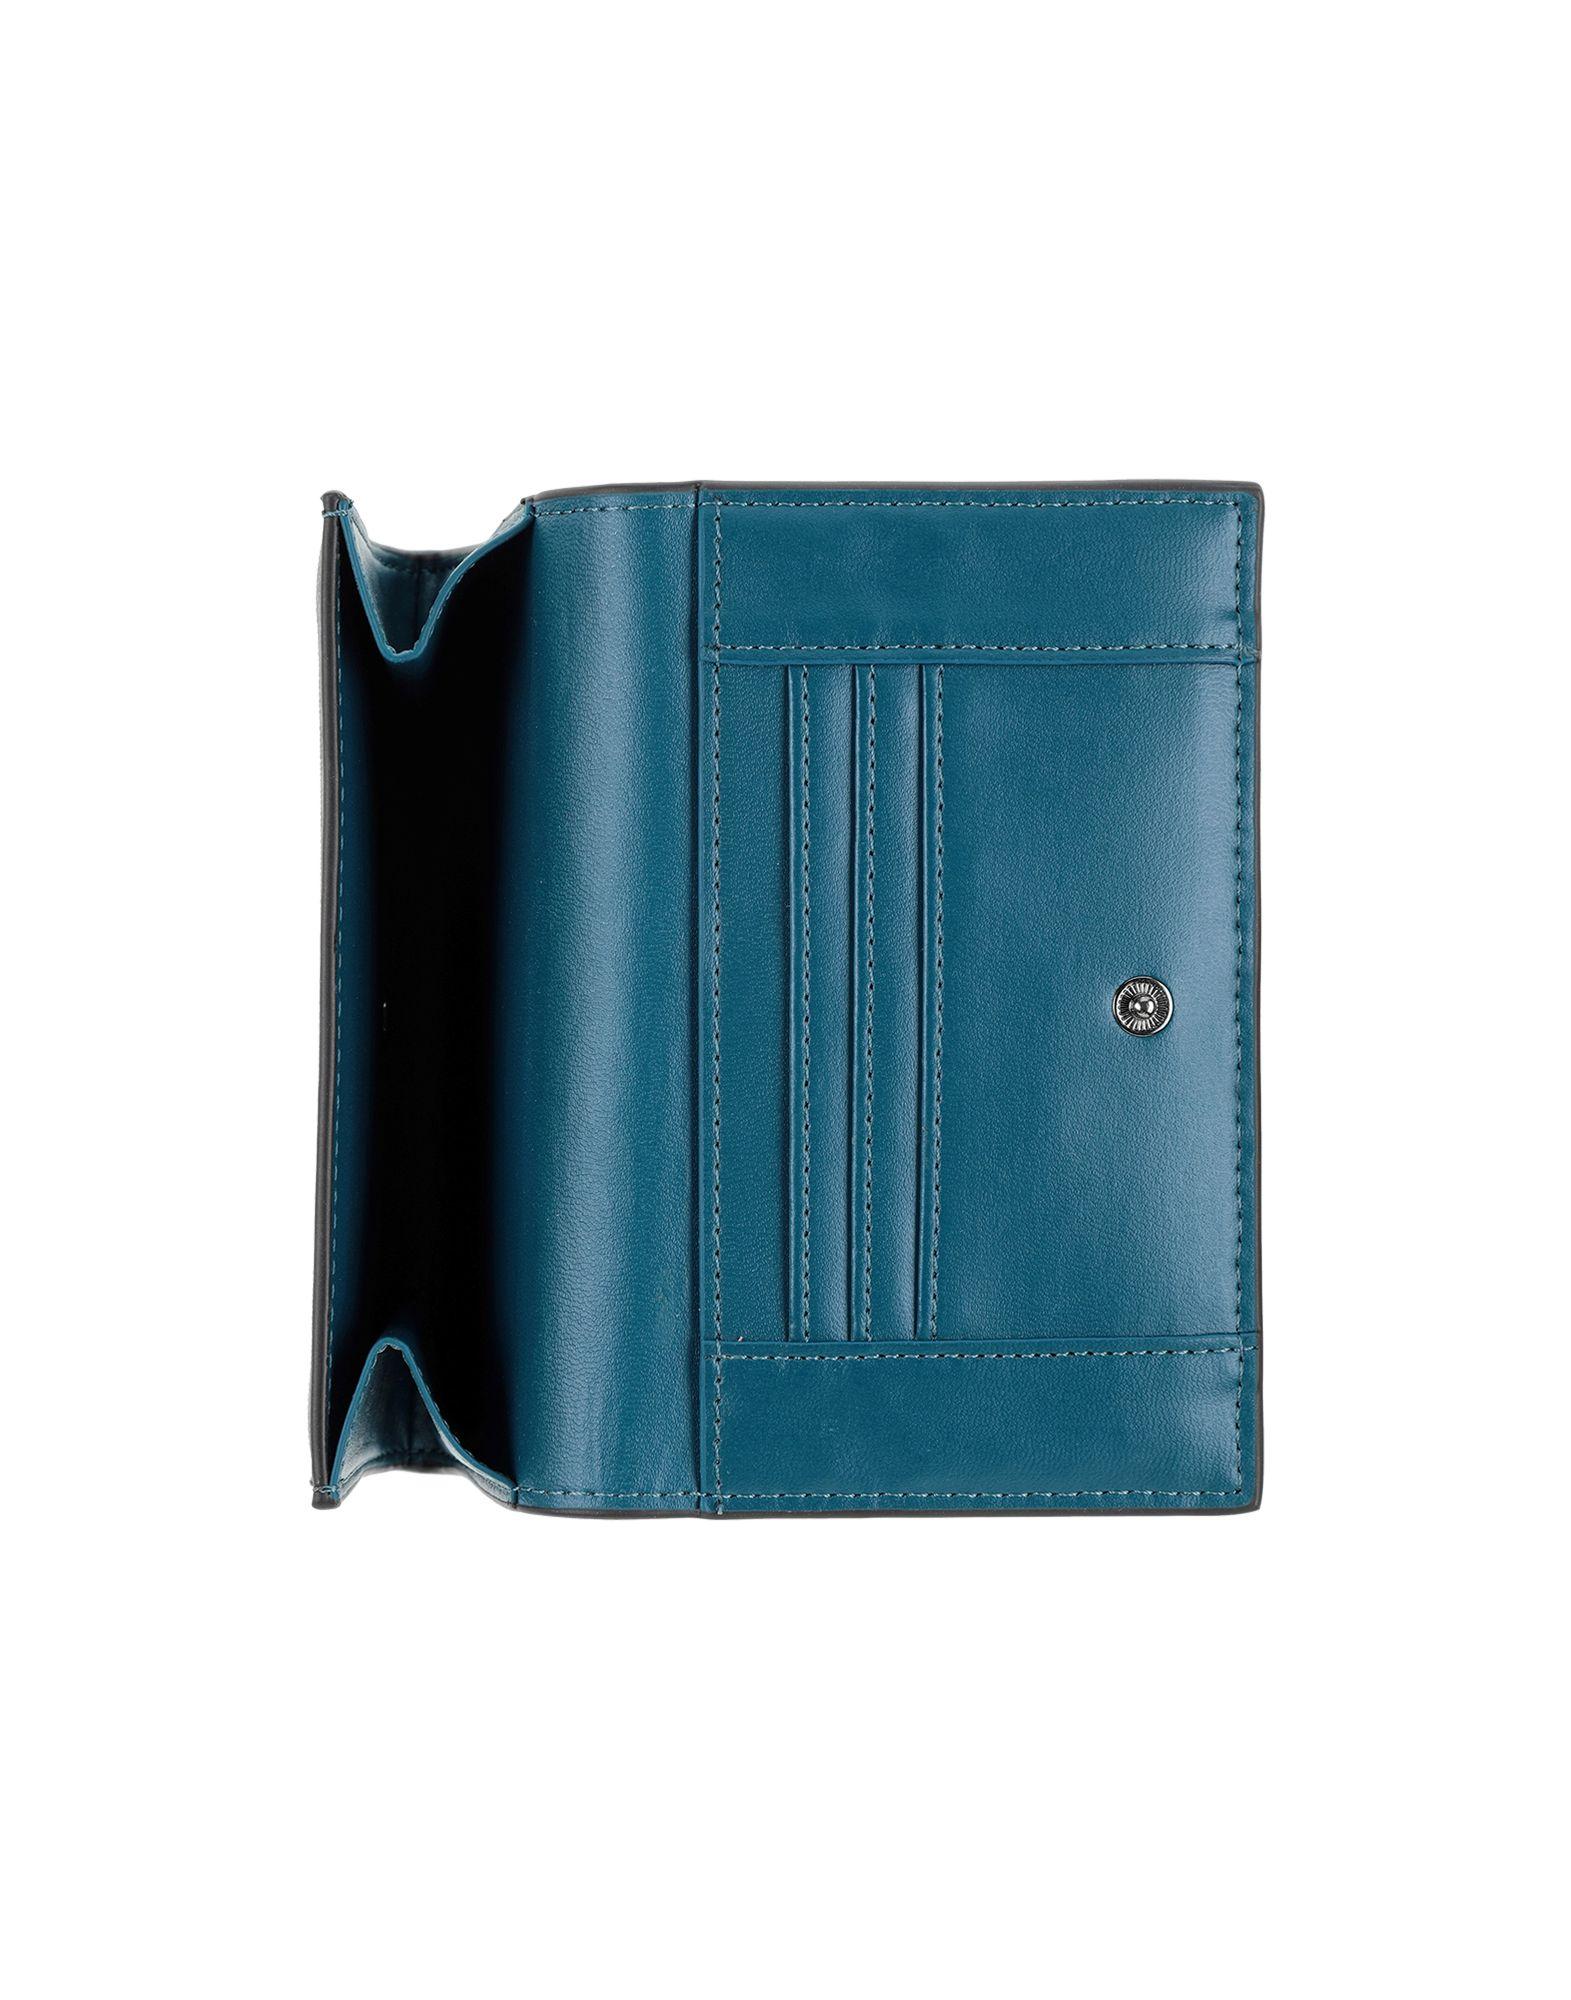 Trussardi Wallet in Dark Brown (Brown) - Lyst